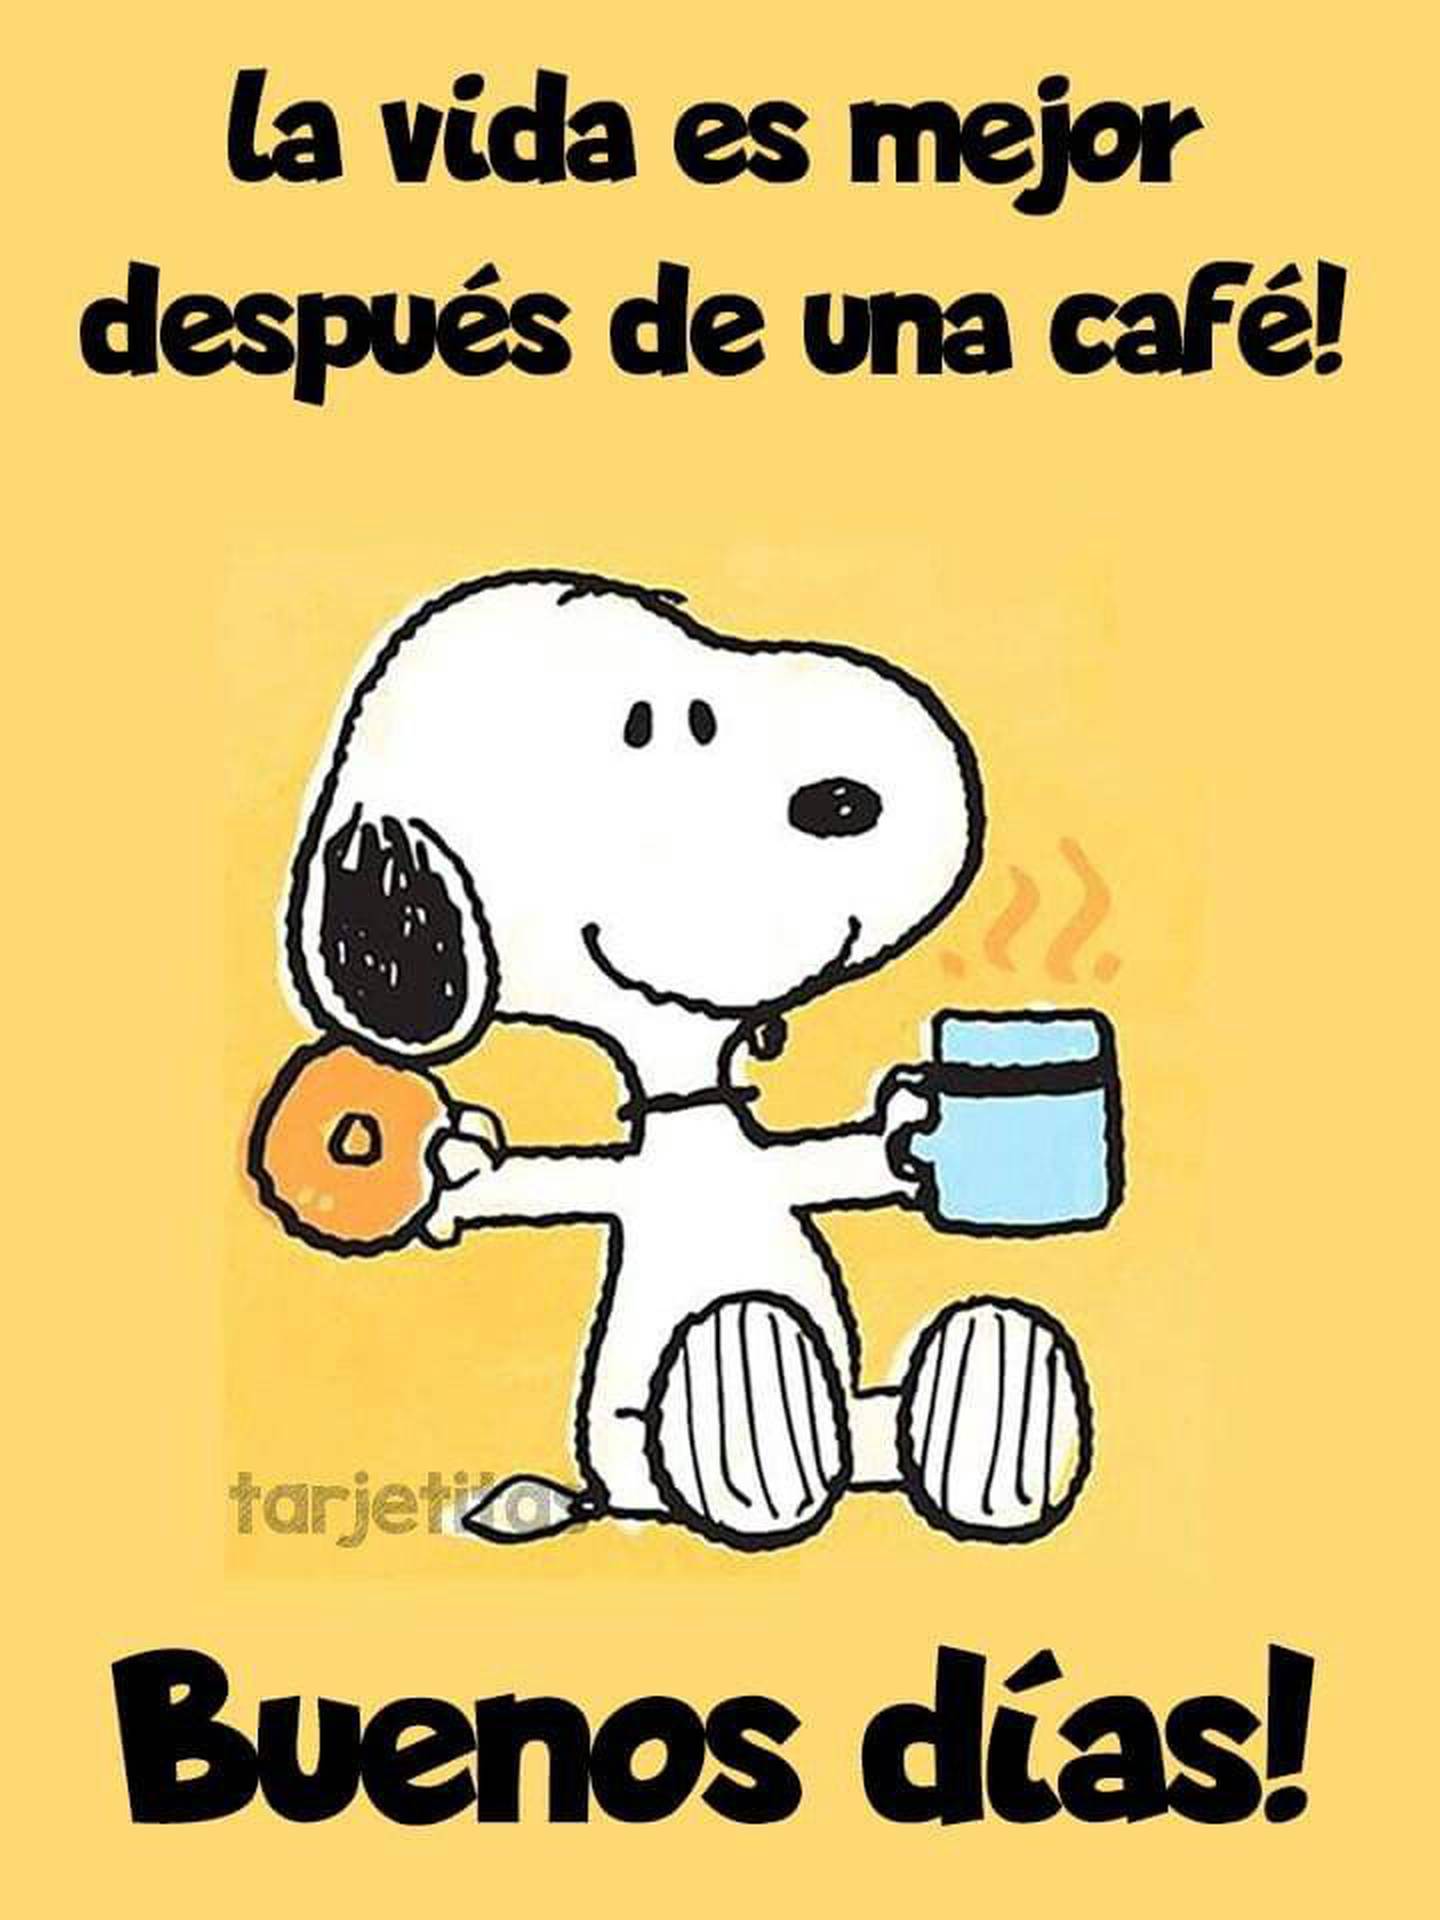 Snoopie tomando café y comiendo una dona con la frase "La vida es mejor después de un café. Buenos días!".